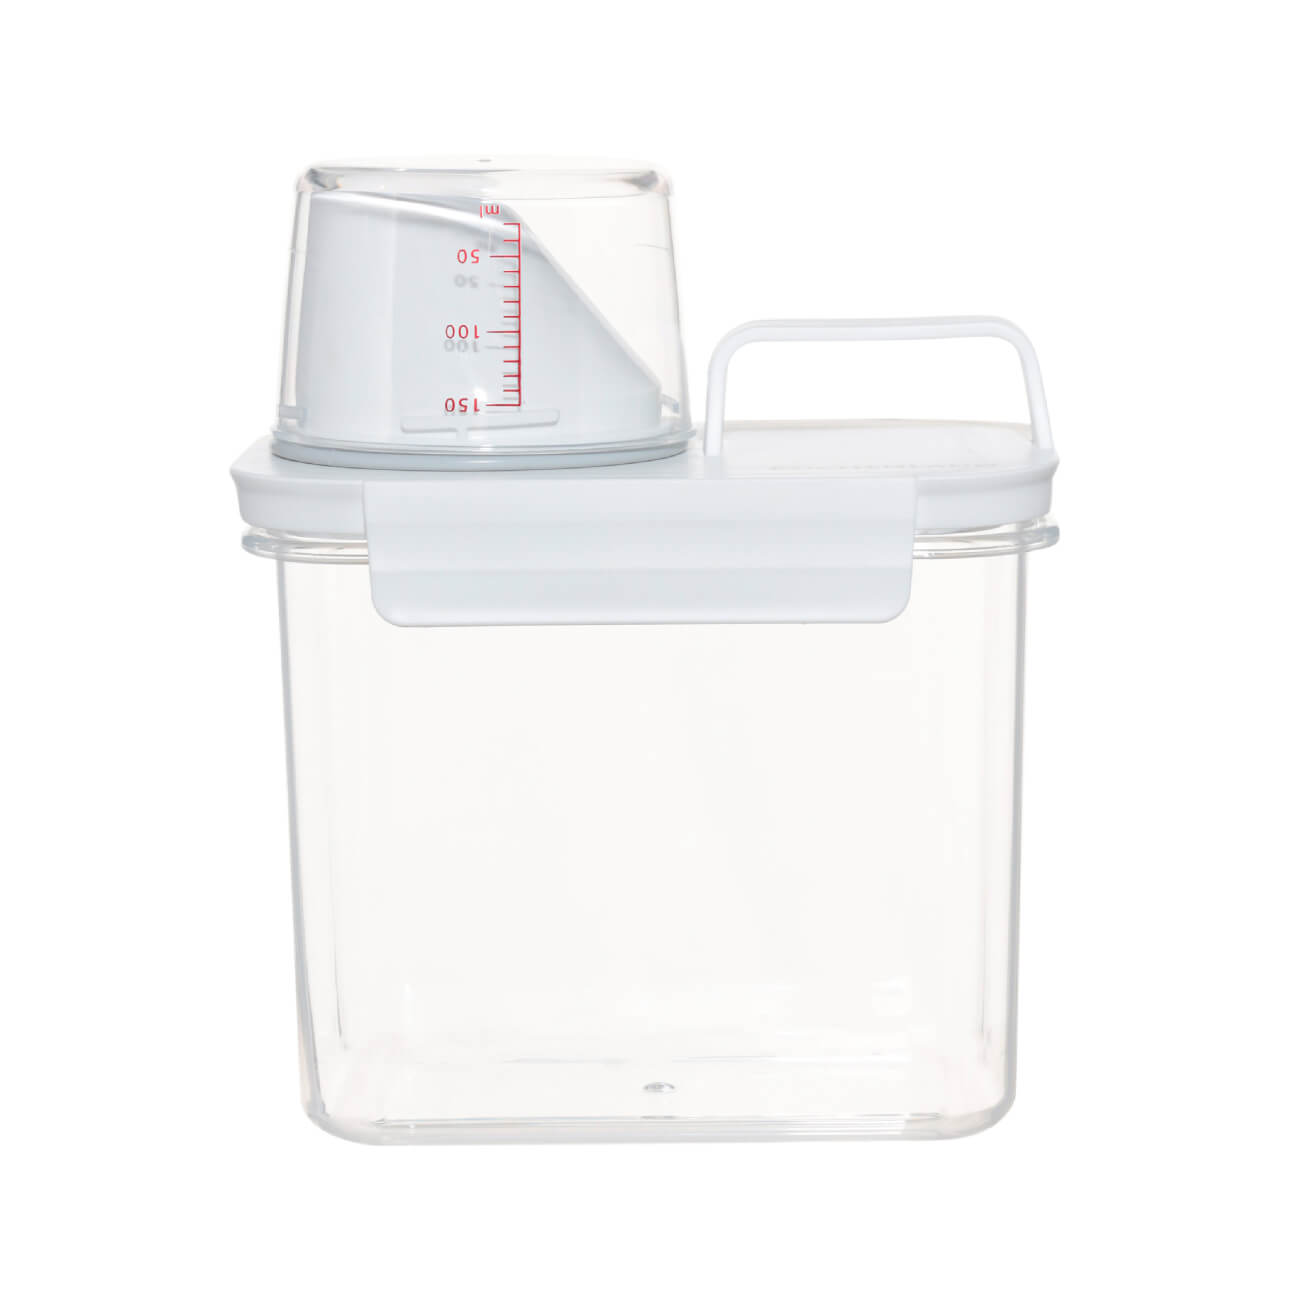 Контейнер для стирального порошка или геля, 1,1 л, с мерником, пластик, белый, Compact контейнер для стирального порошка полимербыт